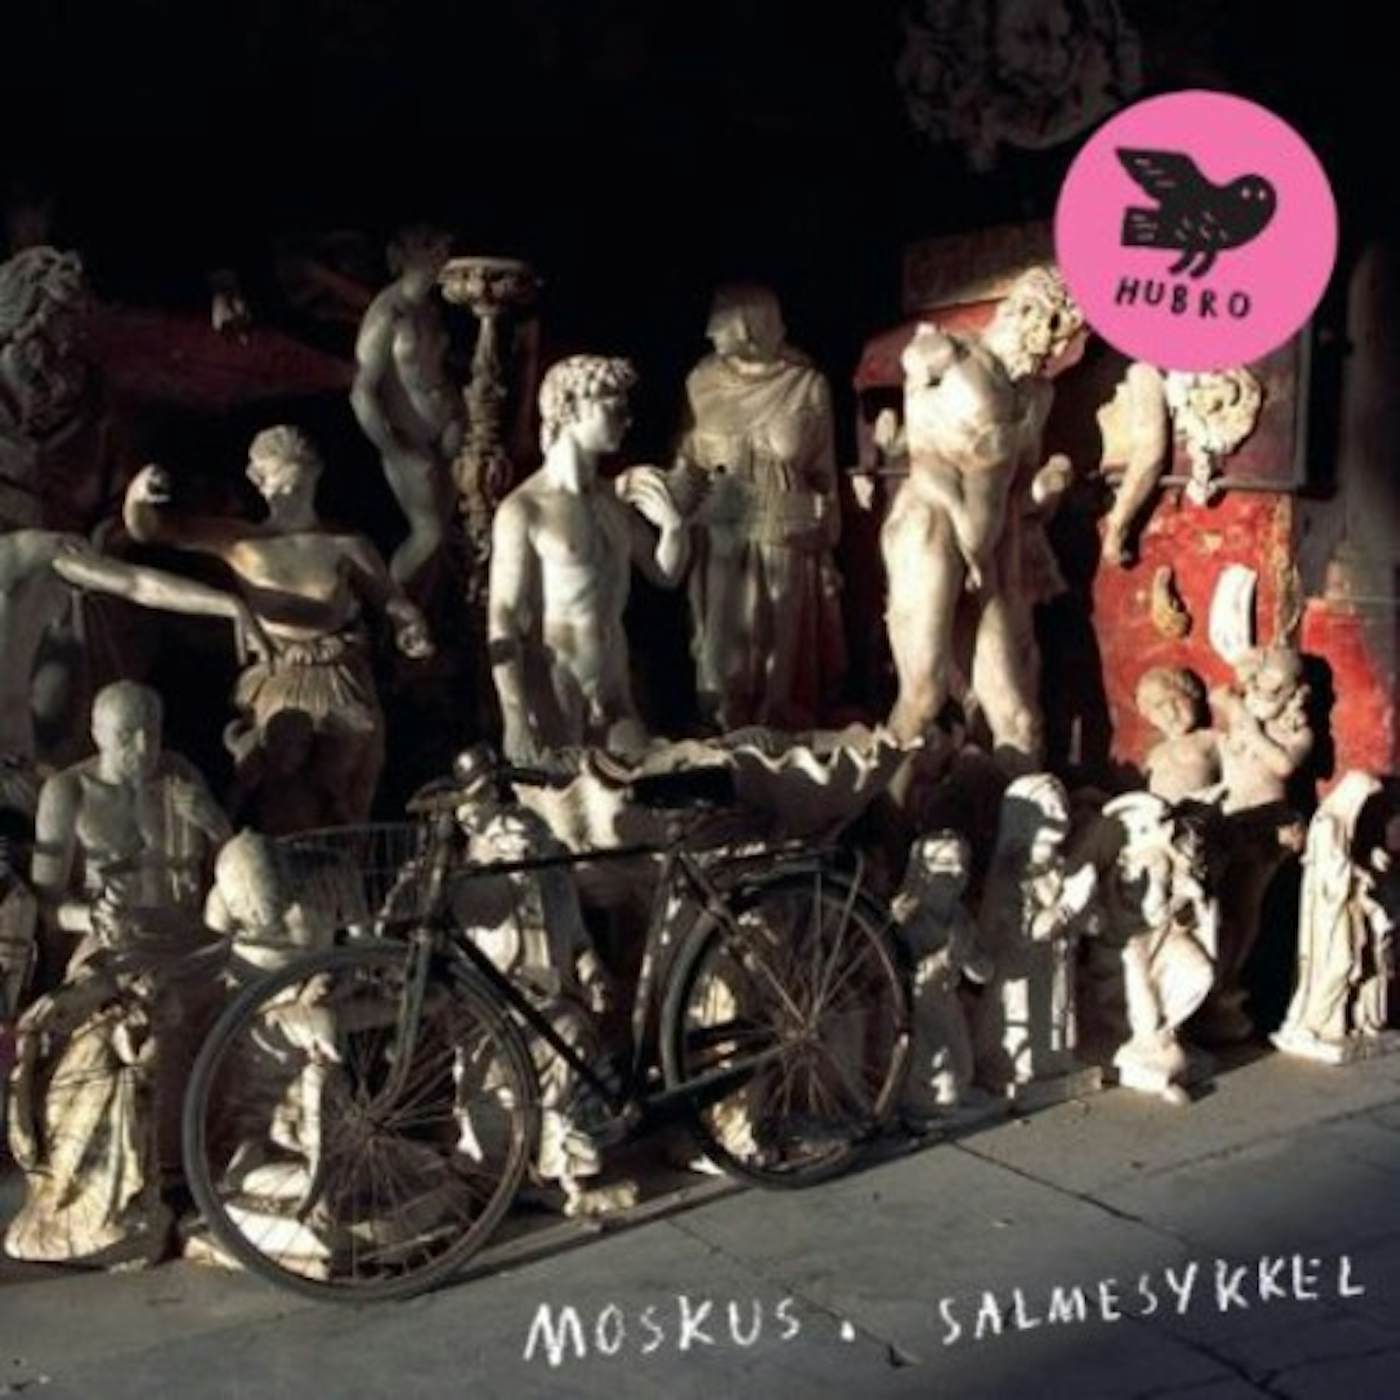 Moskus Salmesykkel Vinyl Record